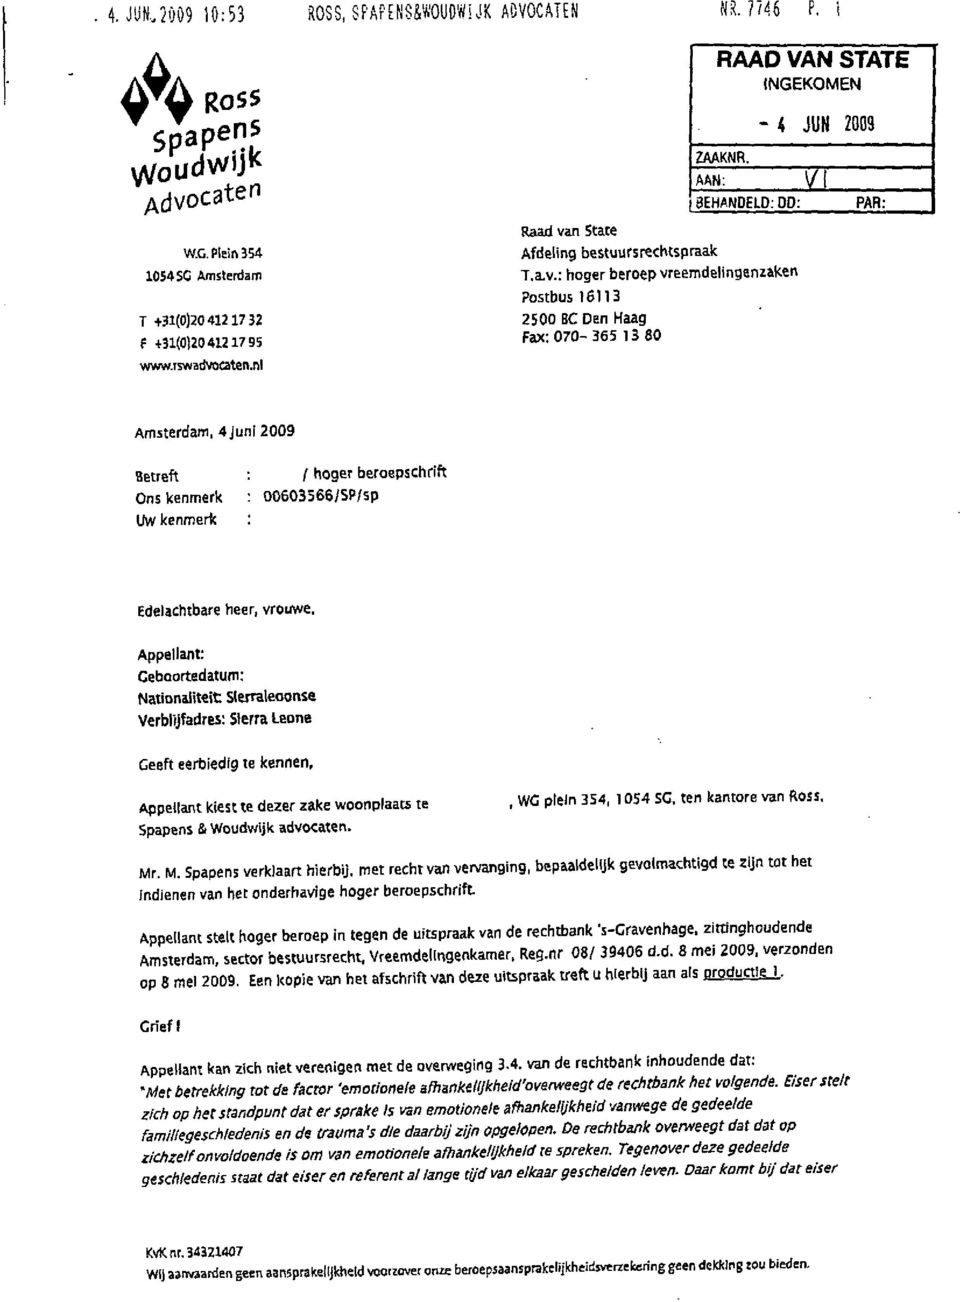 nl PAR: Amsterdam, 4 juni 2009 Betreft Ons kenmerk Uw kenmerk / hoger beroepschrift 00603566/SP/sp Edelachtbare heer, vrouwe.